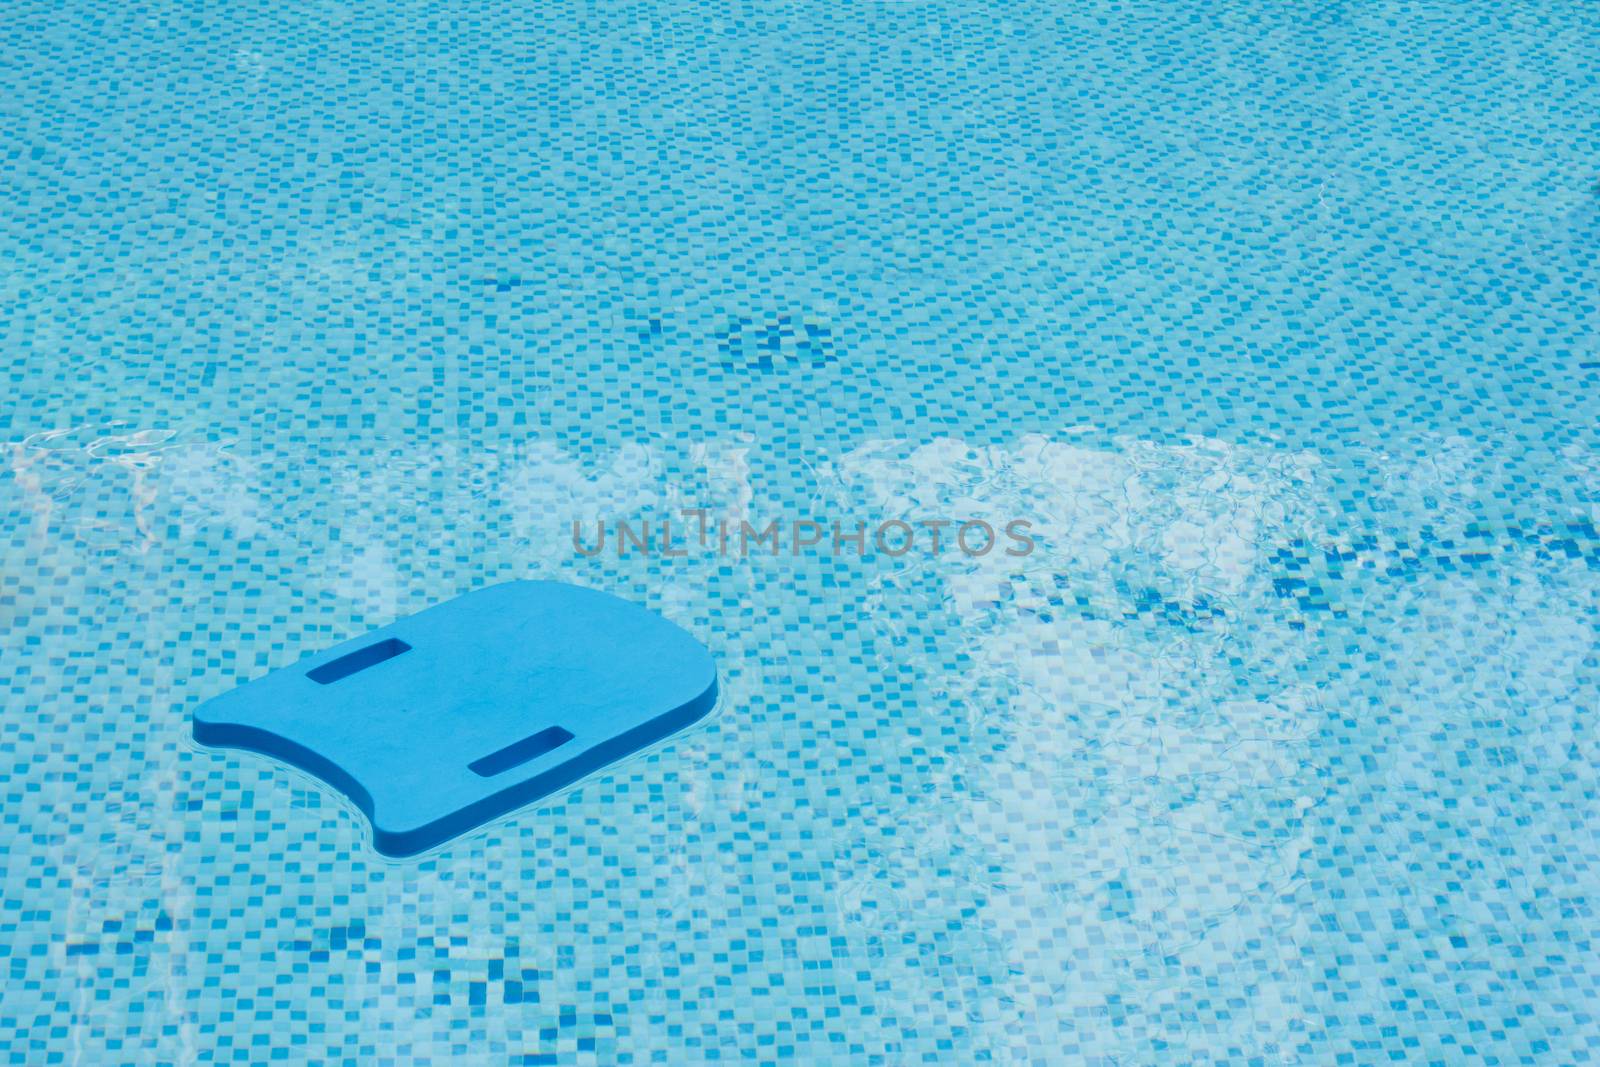 Kick board in swimming pool by vitawin